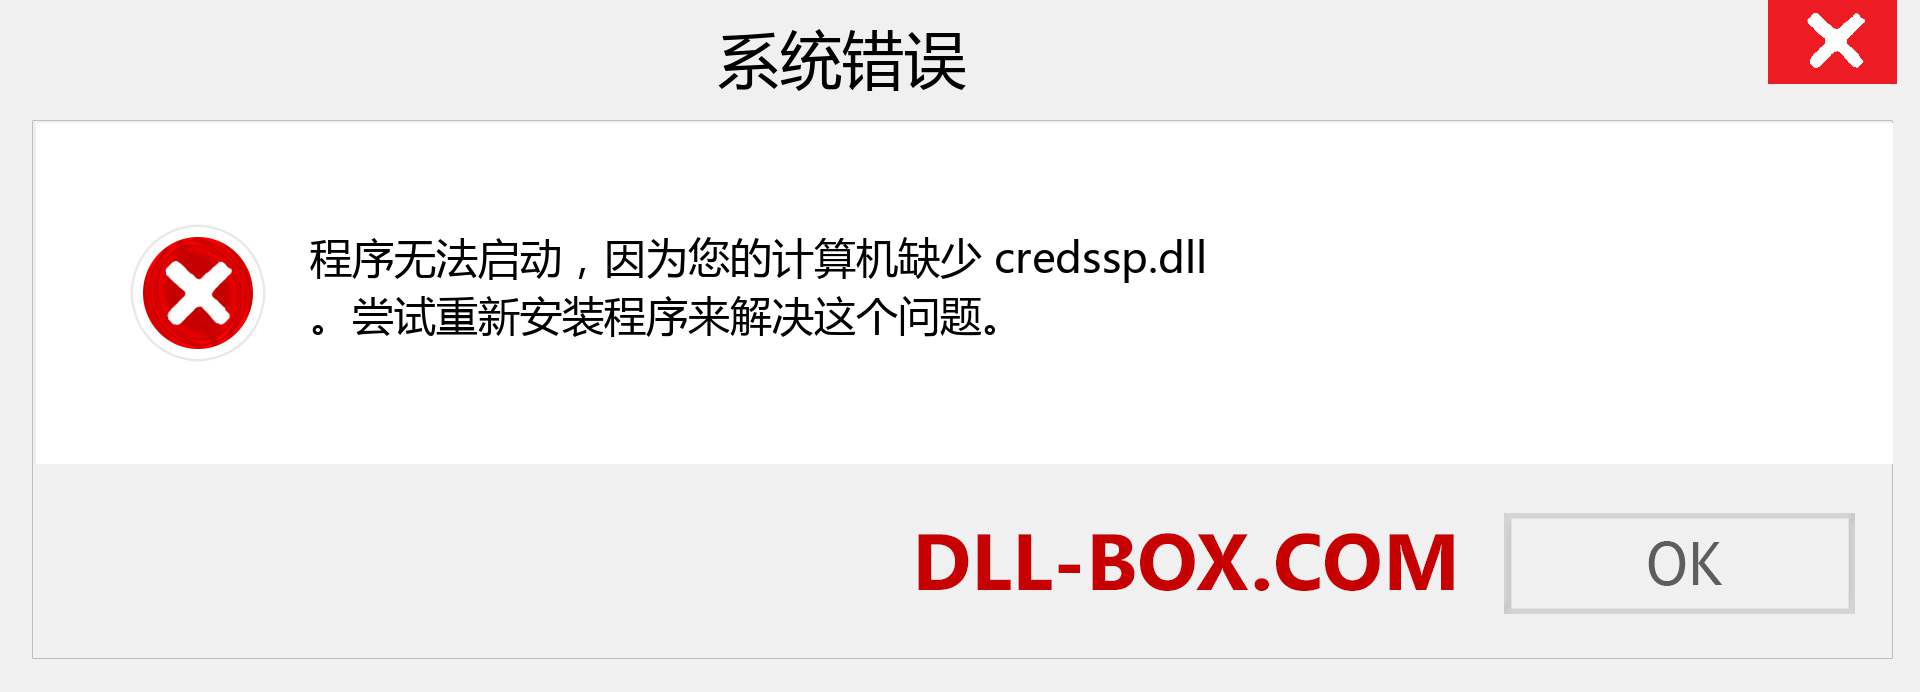 credssp.dll 文件丢失？。 适用于 Windows 7、8、10 的下载 - 修复 Windows、照片、图像上的 credssp dll 丢失错误